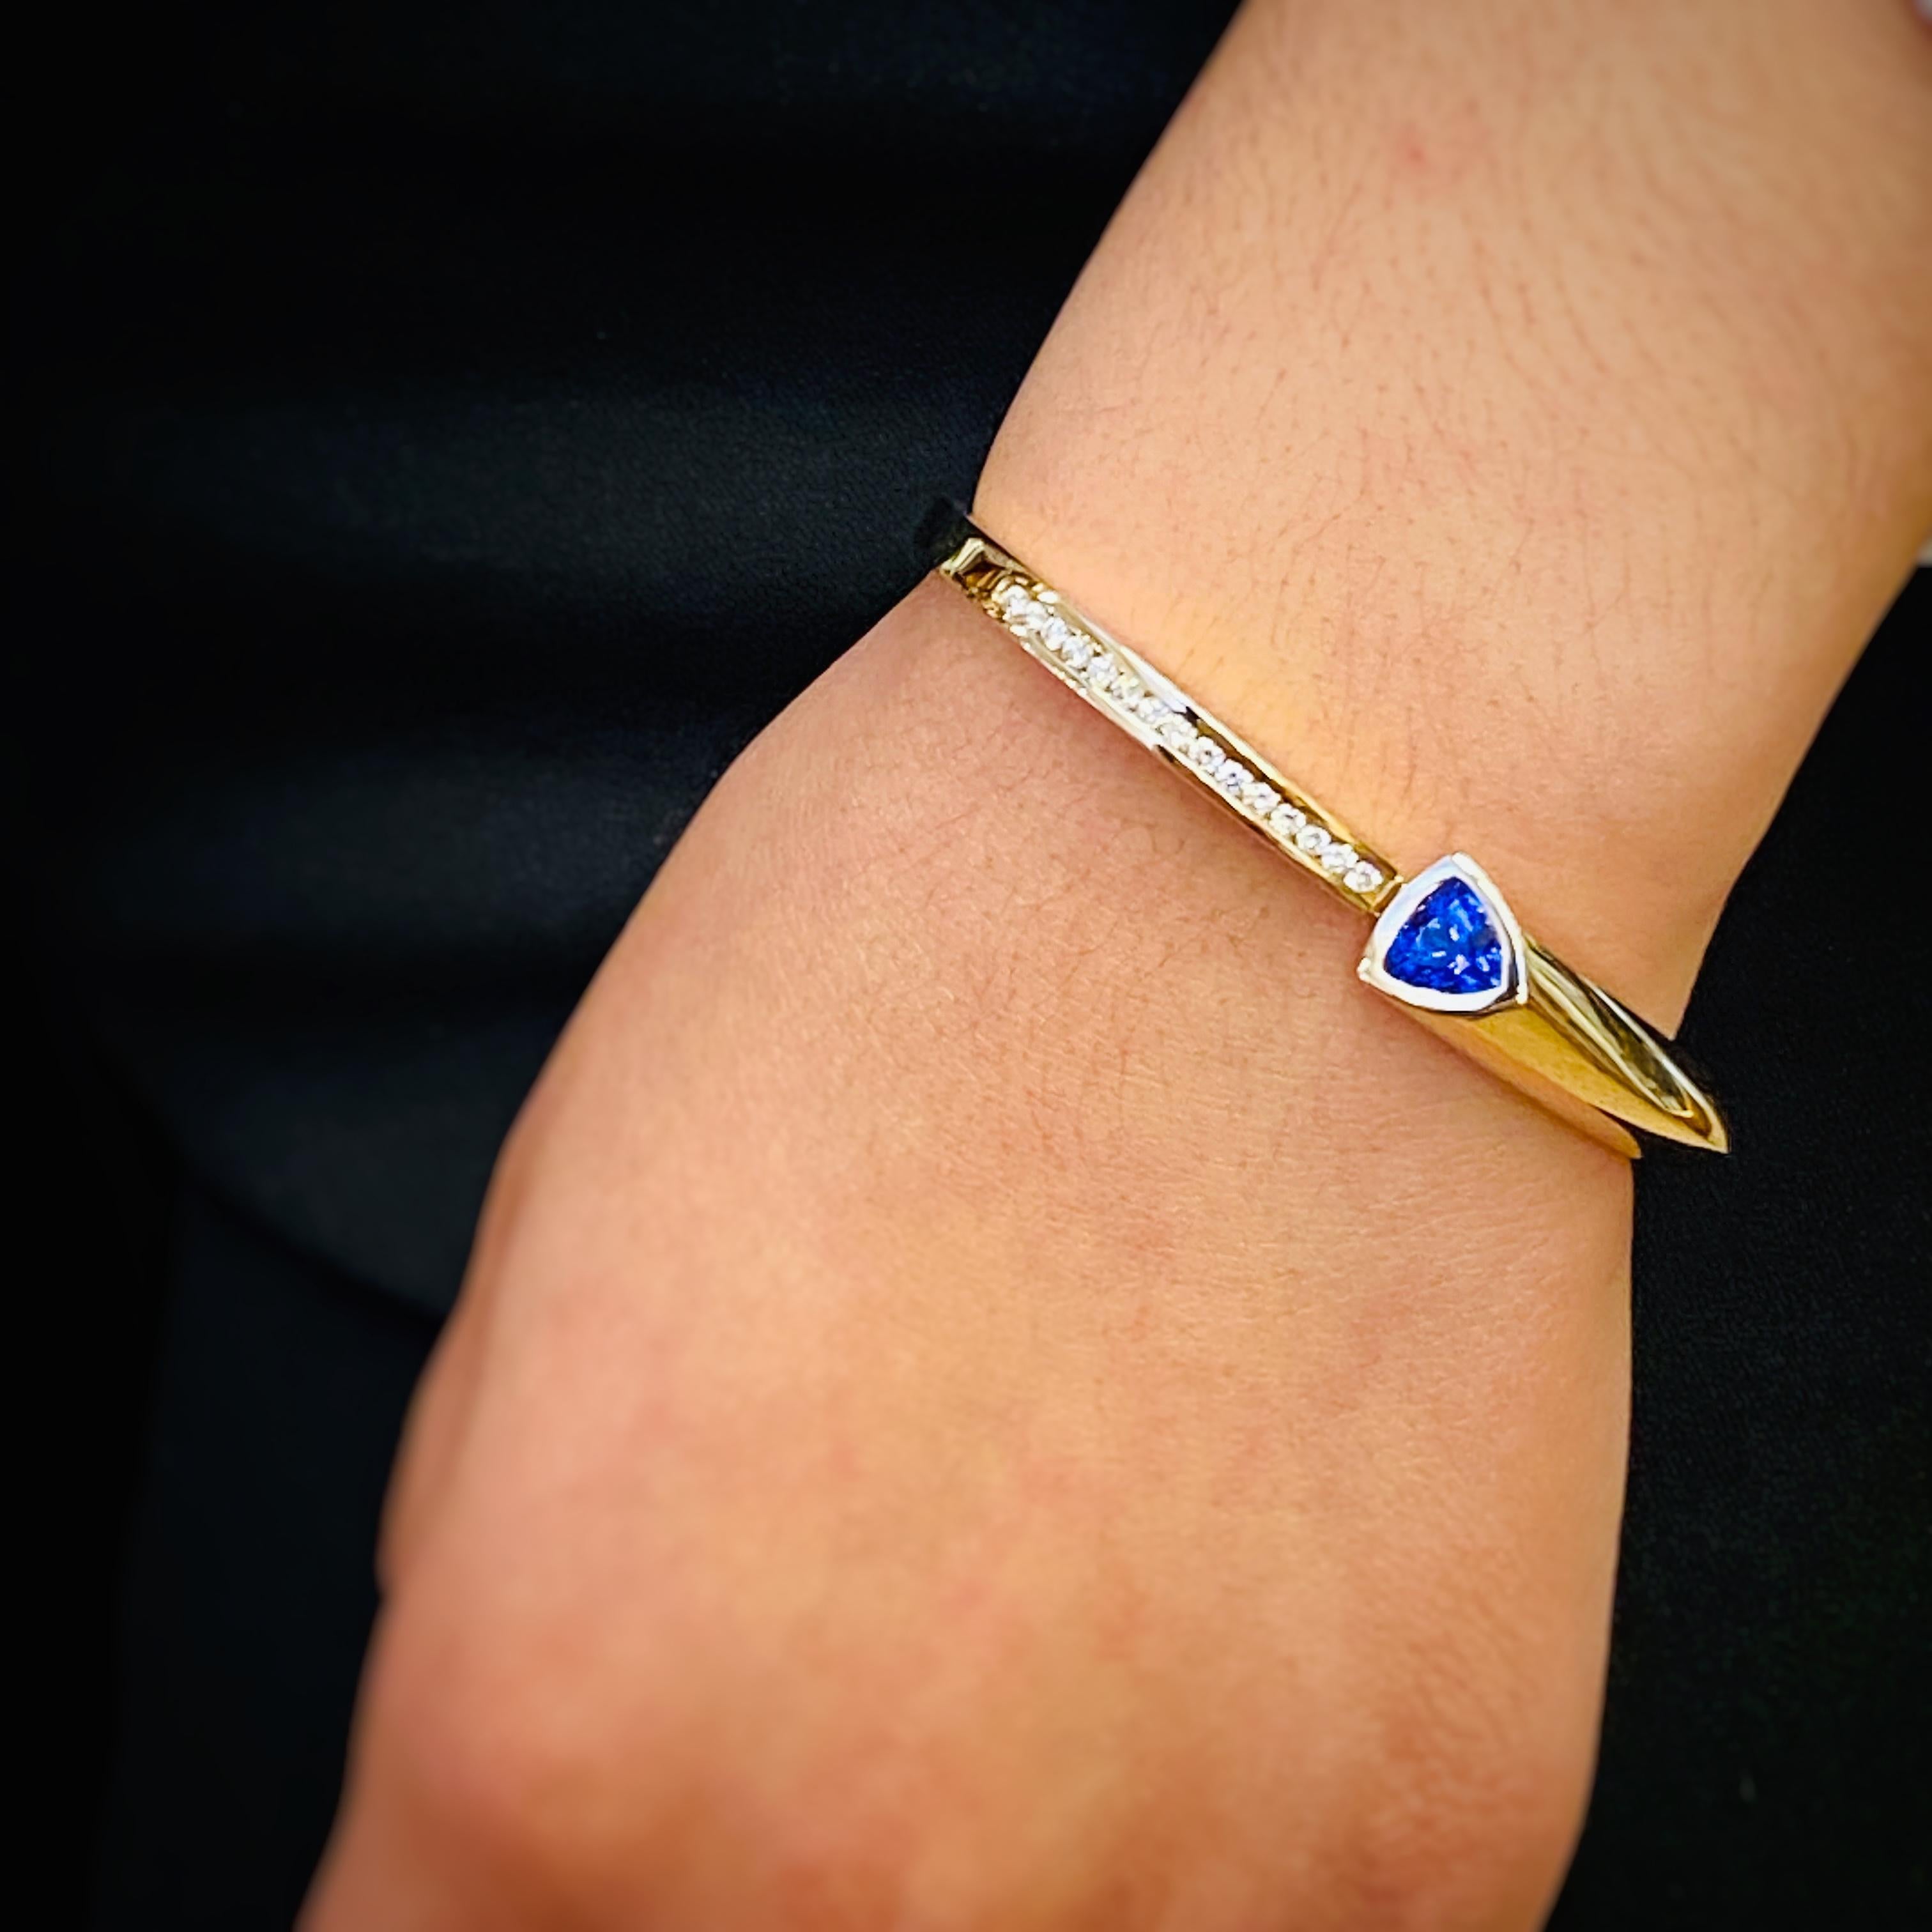 Une tanzanite unique, en forme de trillion, d'une couleur magnifique, est présentée dans ce bracelet en or 14k poli par Cornelis Hollander.  Des pavés de diamants ornent l'autre côté de ce bracelet à charnière.
Etat neuf, jamais porté.
Tanzanite